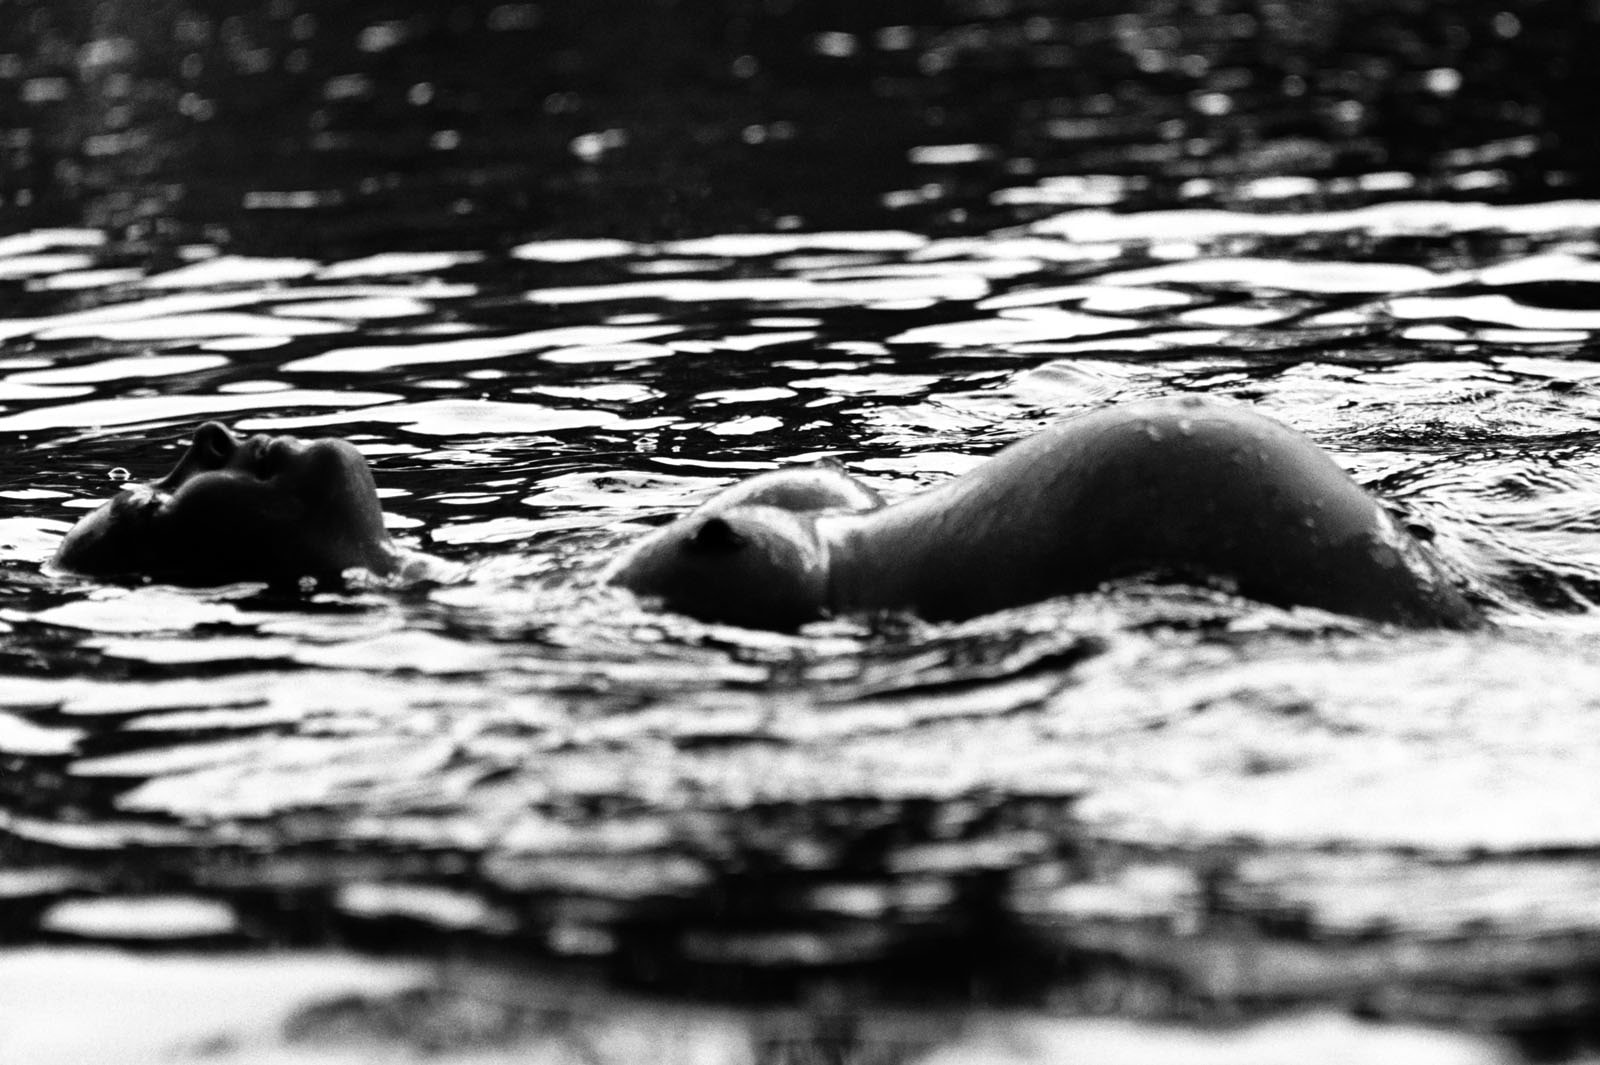 Schwangere schwimmt auf dem Rücken im See und hebt dabei ihren Babybauch aus dem Wasser beim Babybauch Shooting in Hamburg in der Natur